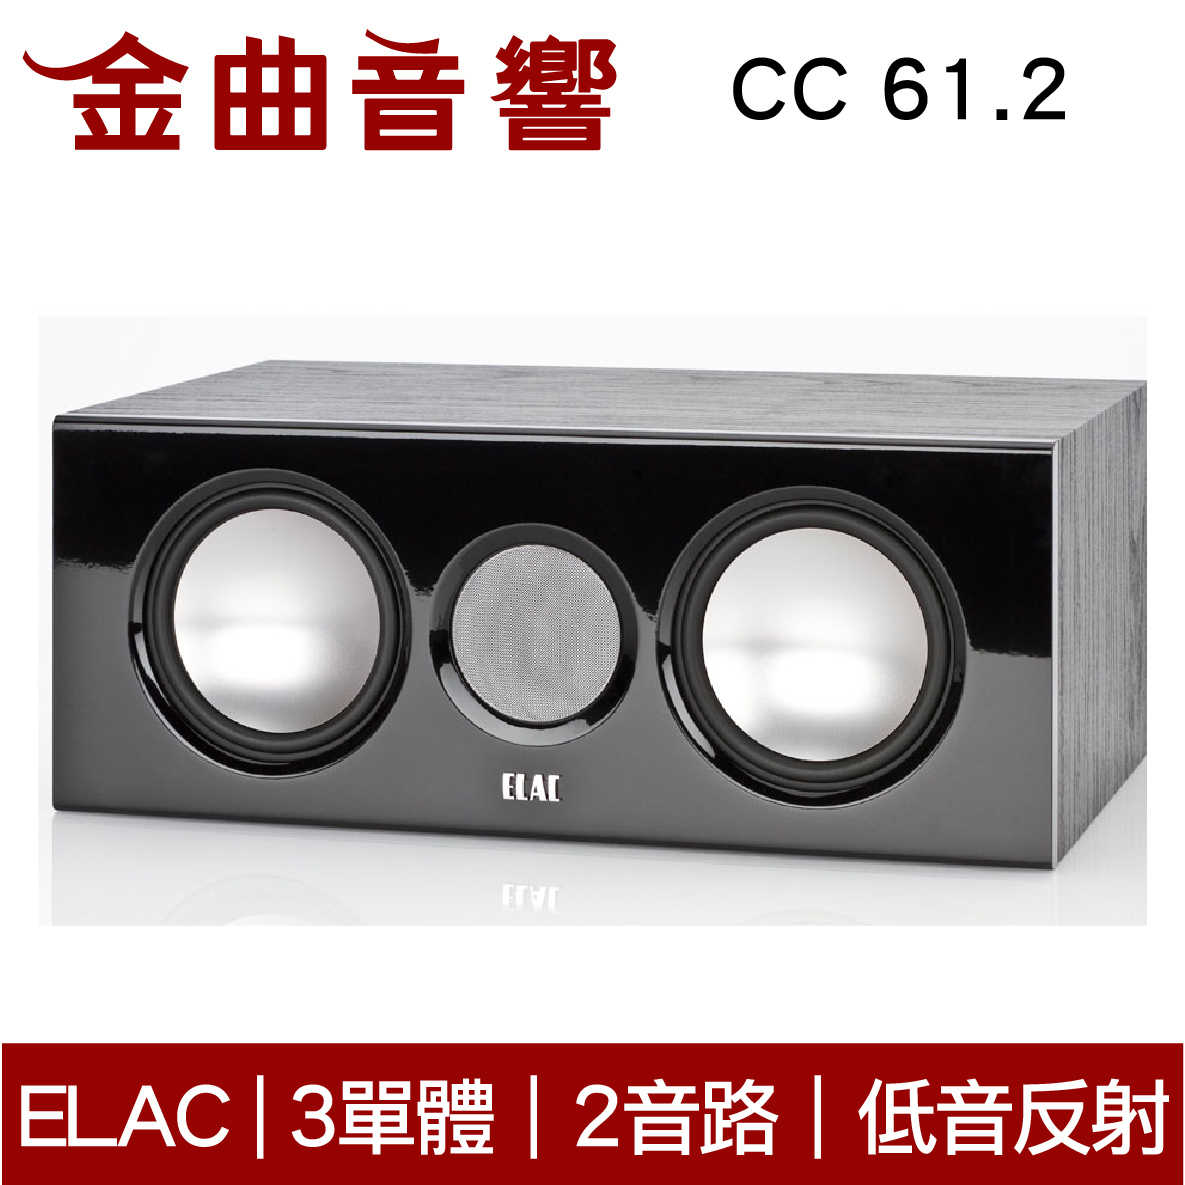 ELAC CC 61.2 中置 揚聲器 音響（單機）| 金曲音響